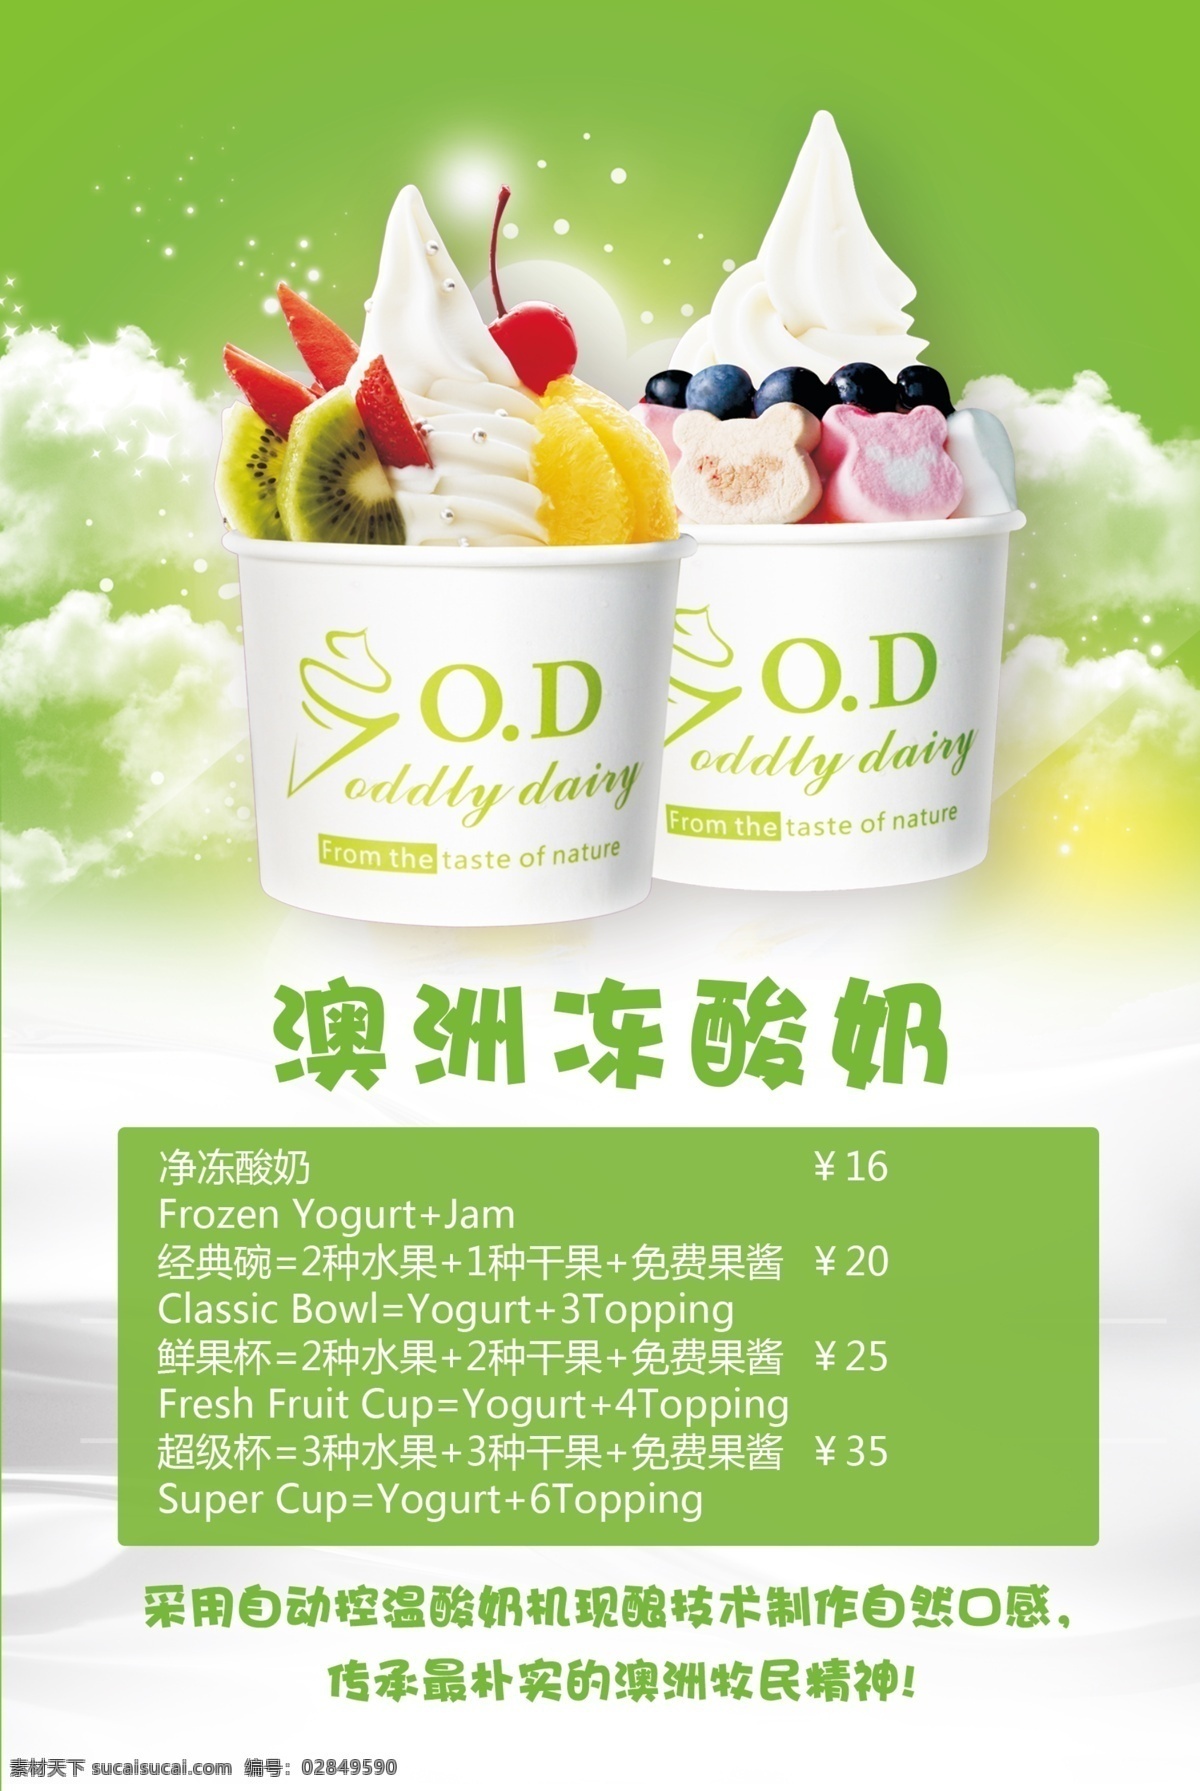 冰淇淋冻酸奶 冰淇淋 冻酸奶 酸奶 冷饮 绿色 夏天 冰爽